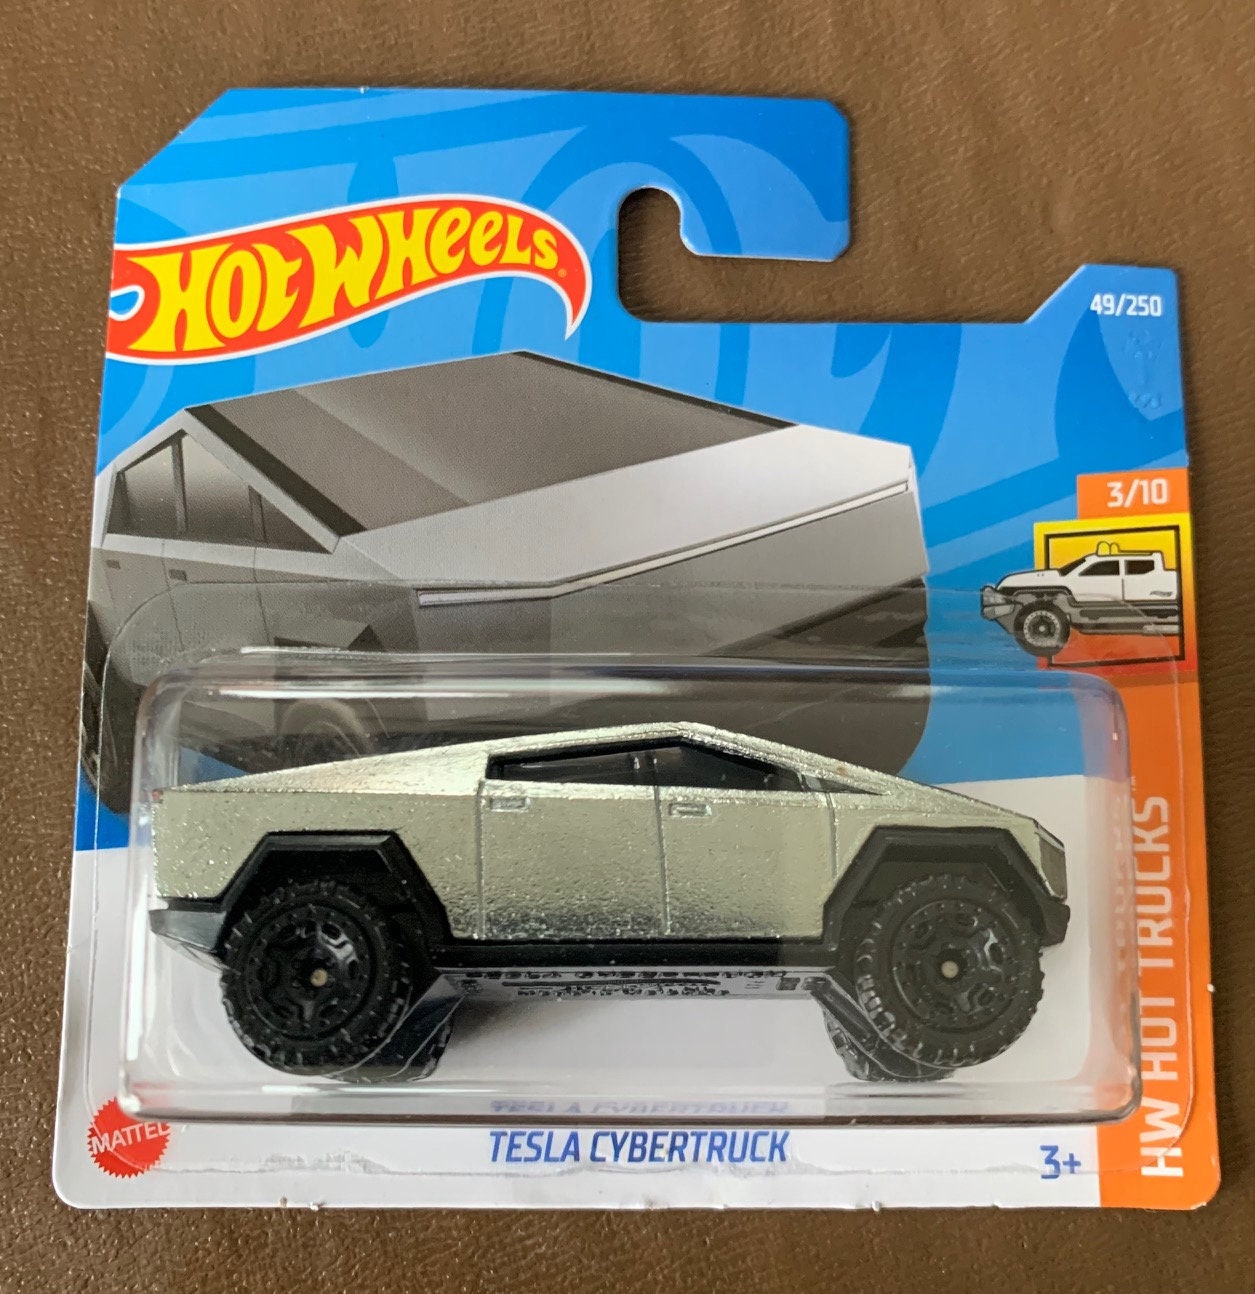 Hot Wheels Tesla Cybertruck Silver 2021 New M Case Box Long Card 